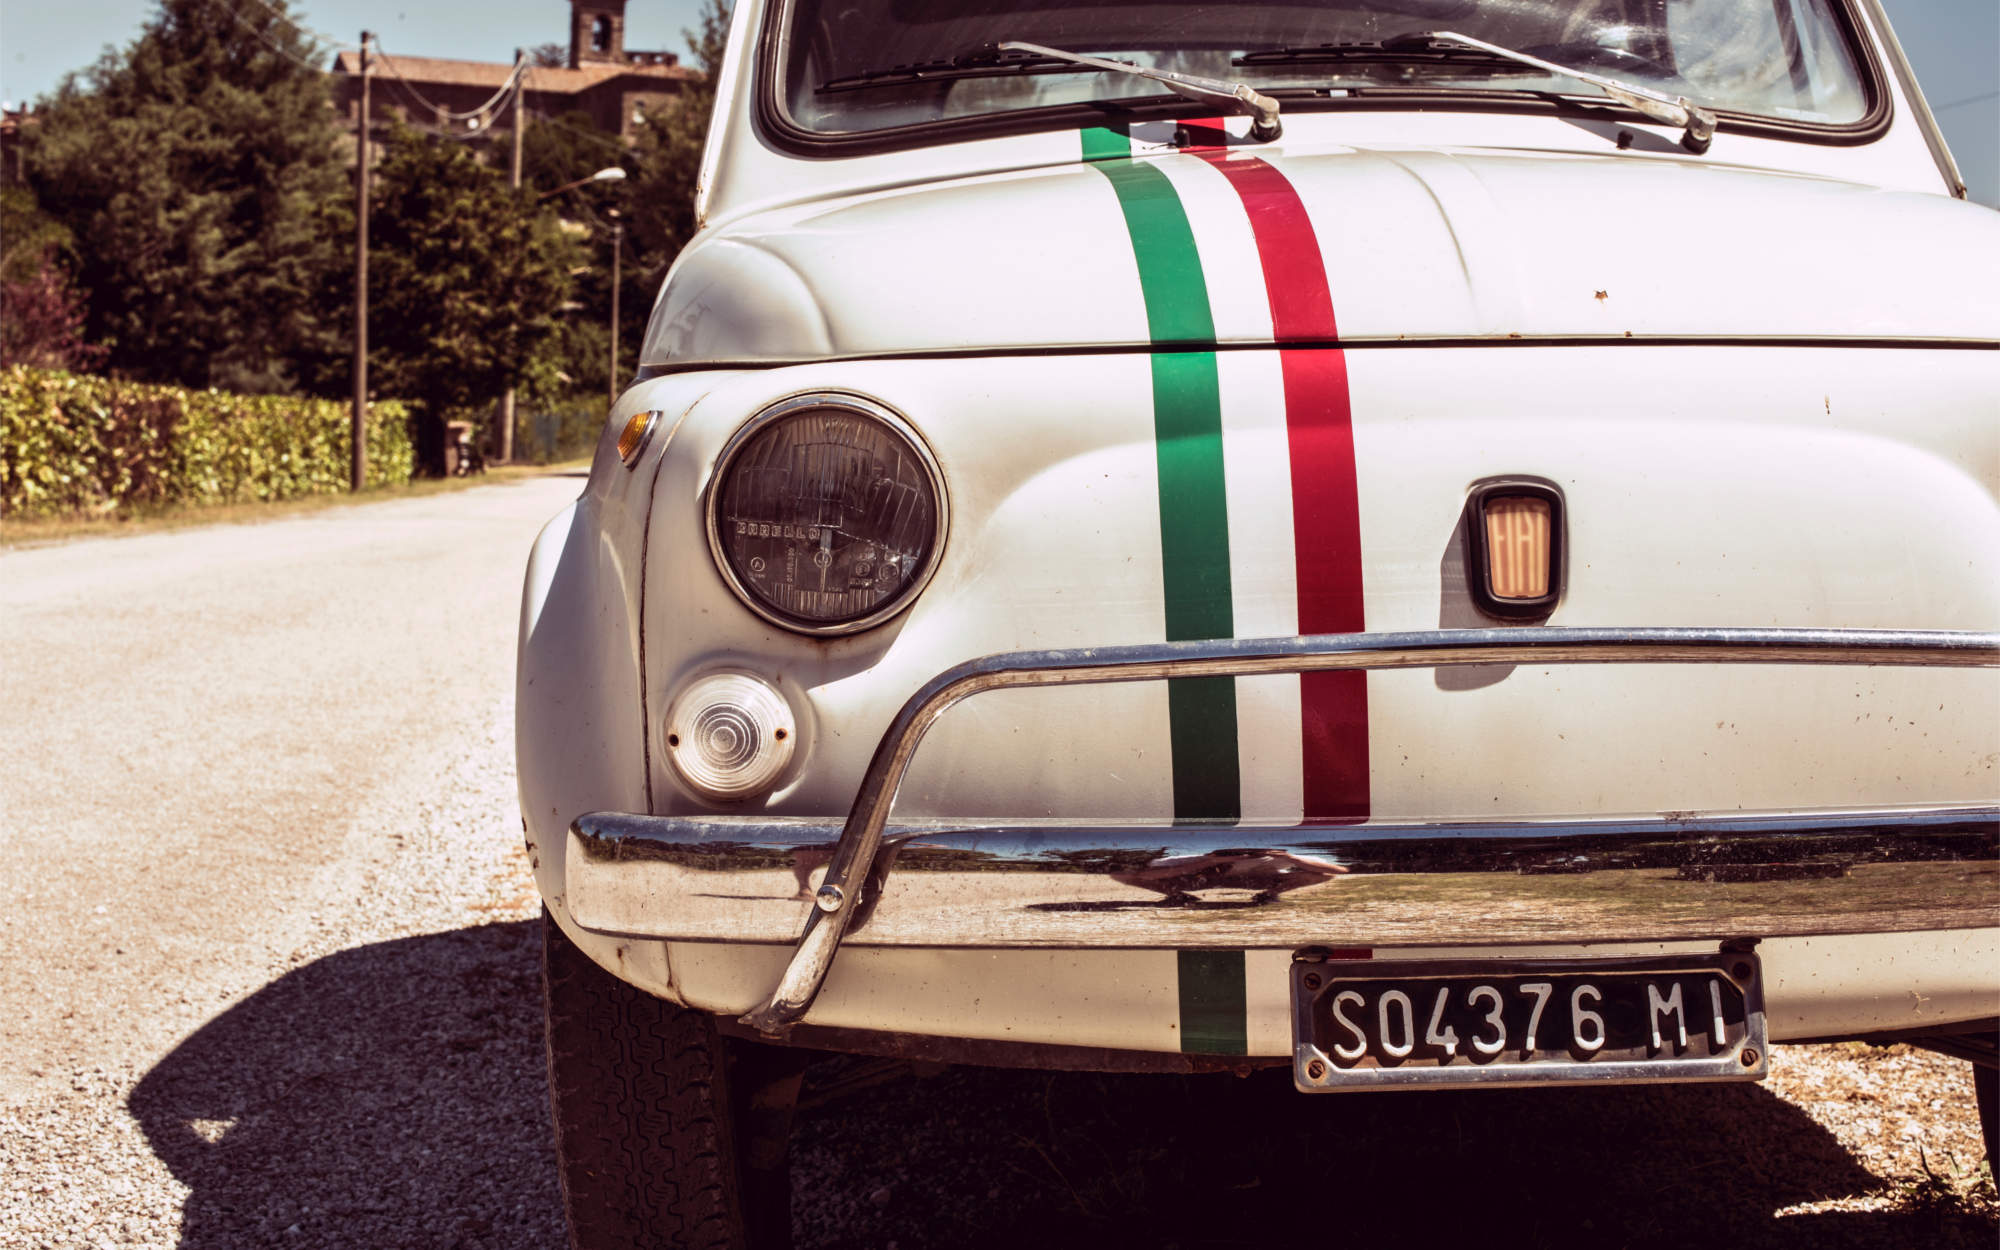 Autoliebhaber: Das Problem mit dem schönen Oldtimer-Nummernschild aus Italien